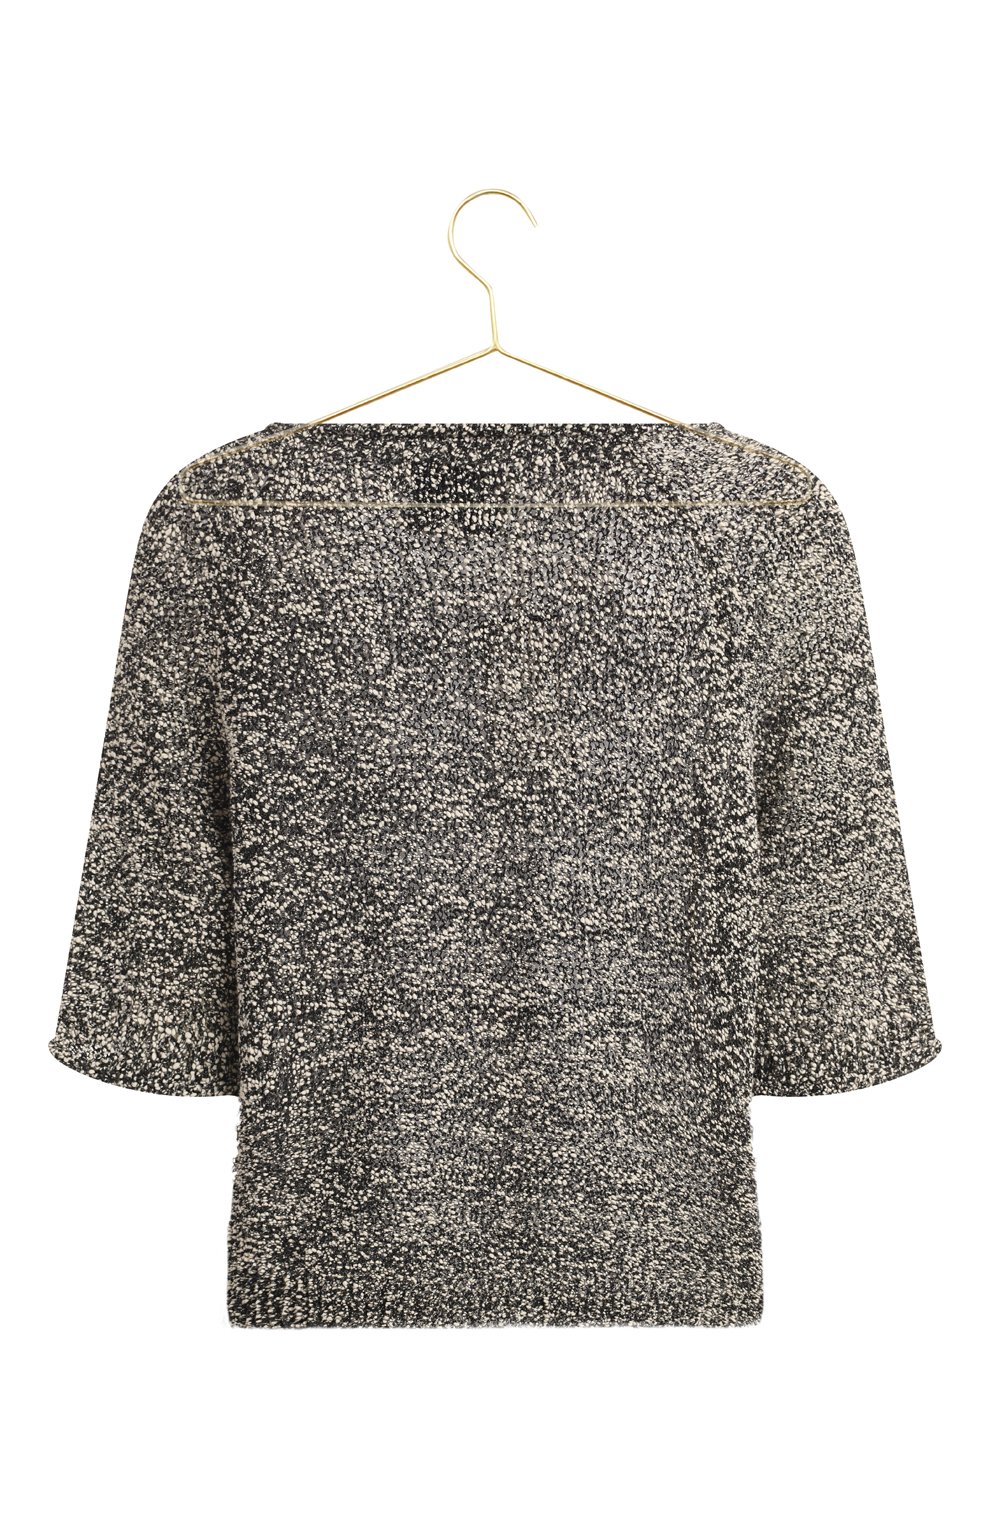 Хлопковый пуловер | 3.1 Phillip Lim | Чёрно-белый - 2